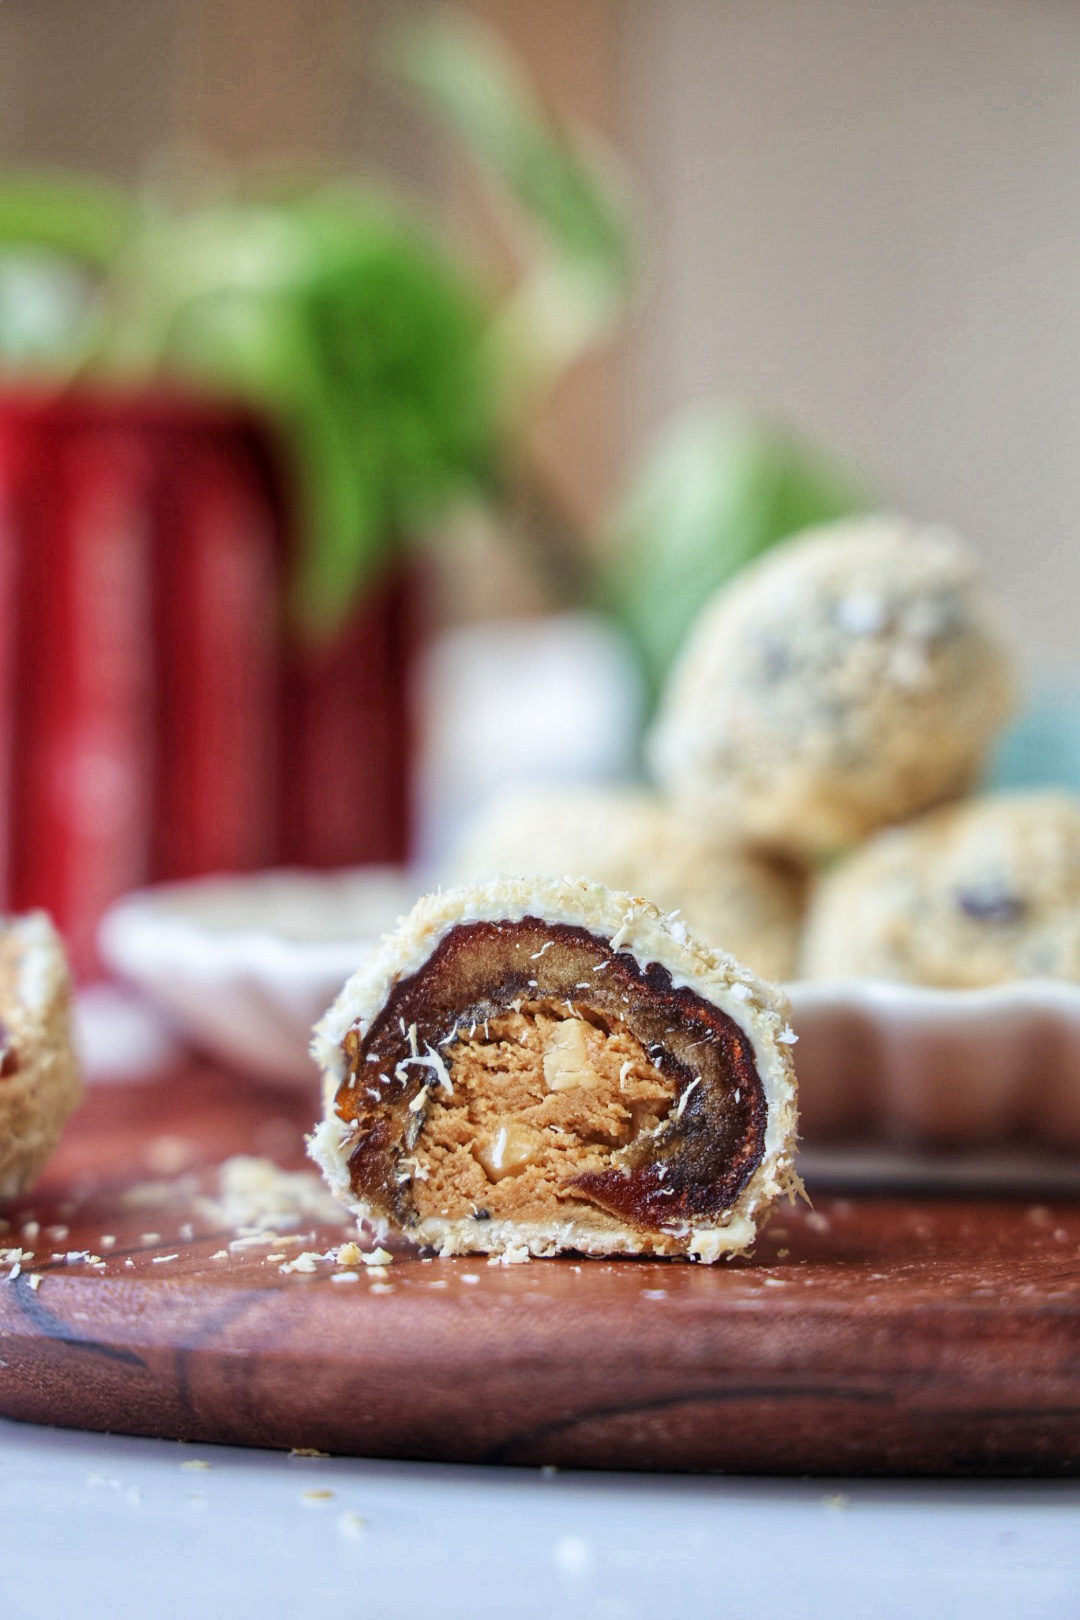 Simple recipe to make Ferrero Rocher and Ferrero Raffaello Chocolates at  home 